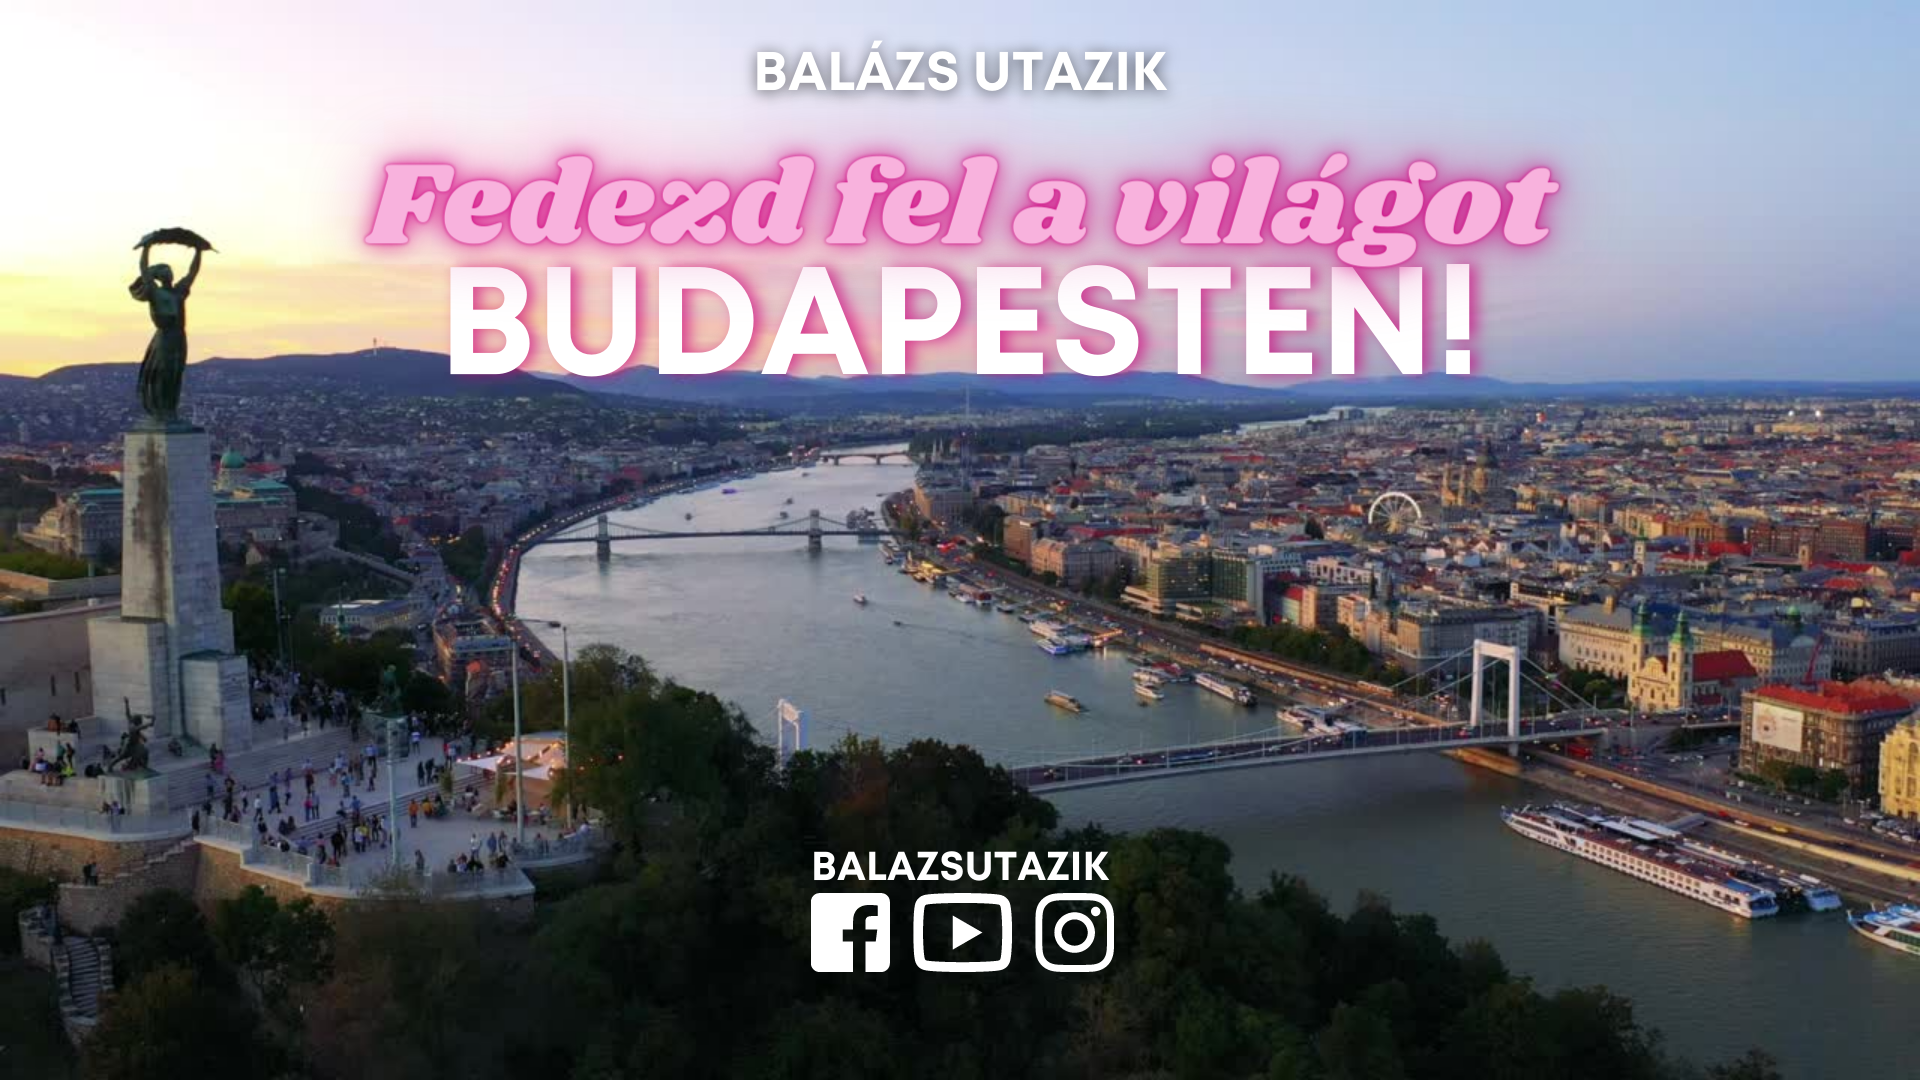 Fedezd fel a világot Budapesten!